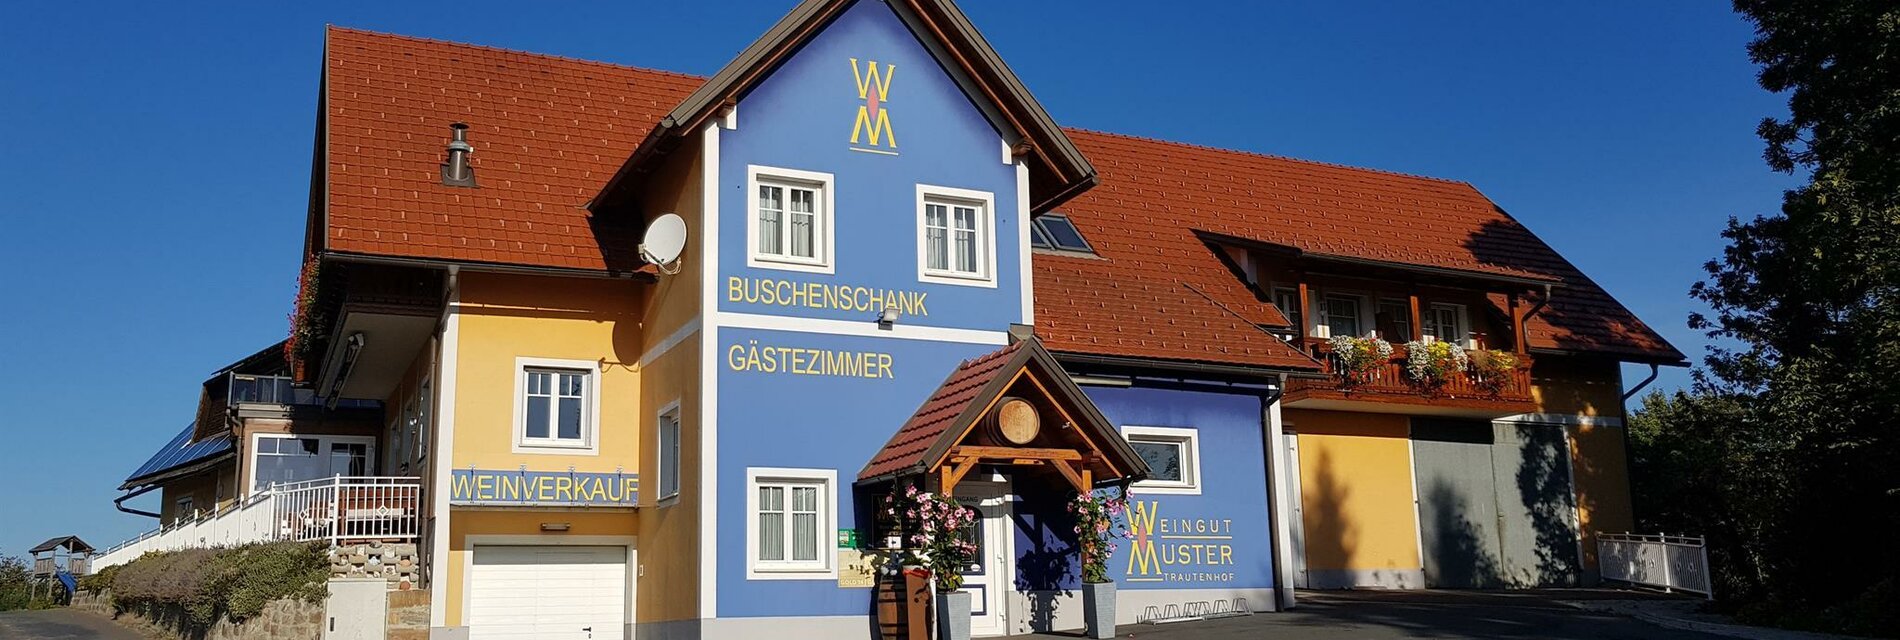 Weingut Muster Bernhard Gästehaus Buschenschank